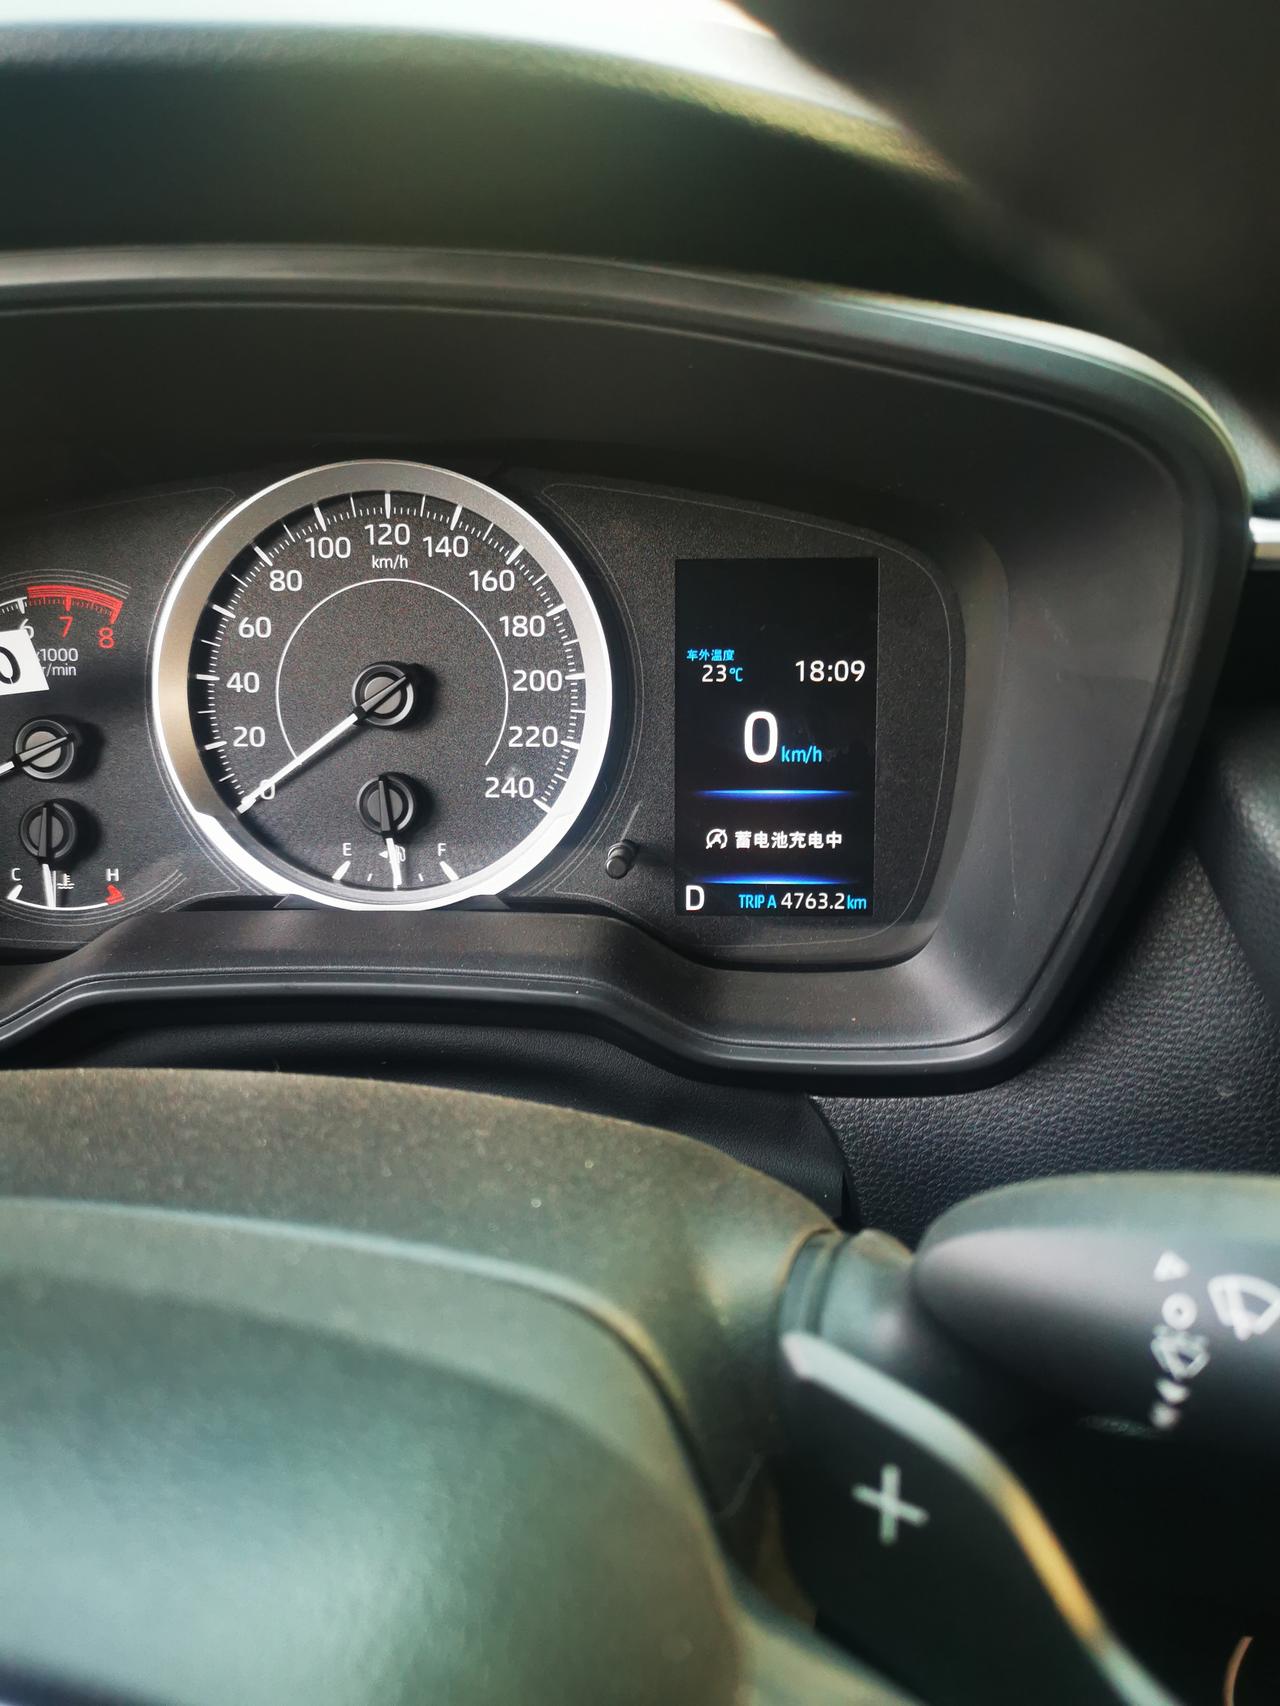 丰田卡罗拉 前面显示屏显示蓄电池充电中，啥意思